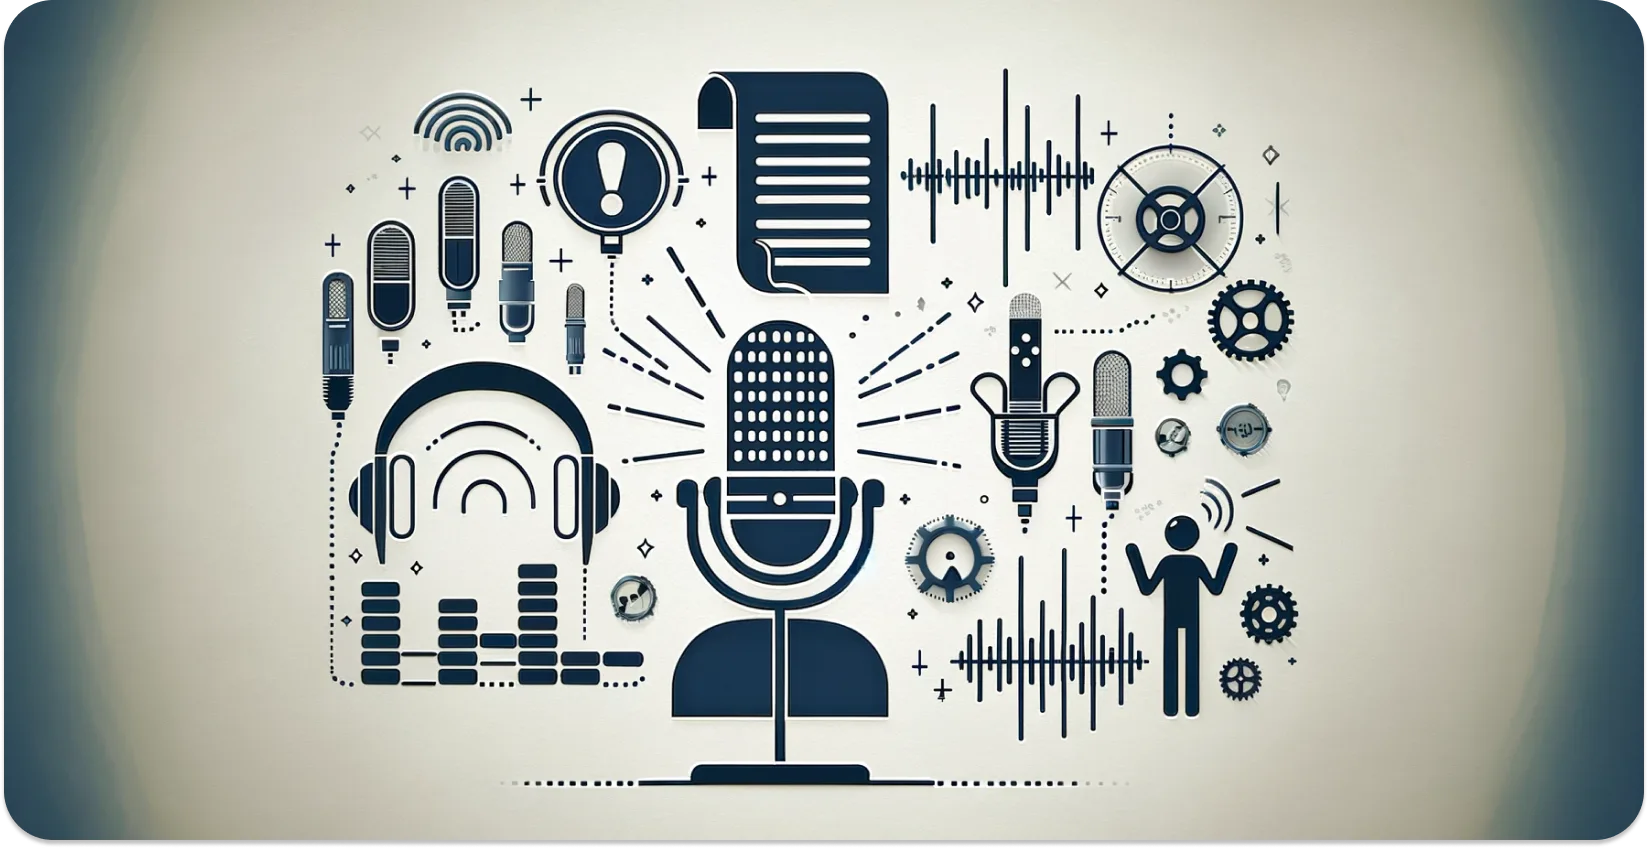 Reprezentare artistică a microfoanelor, căștilor și undelor sonore care simbolizează transcrierea audio.